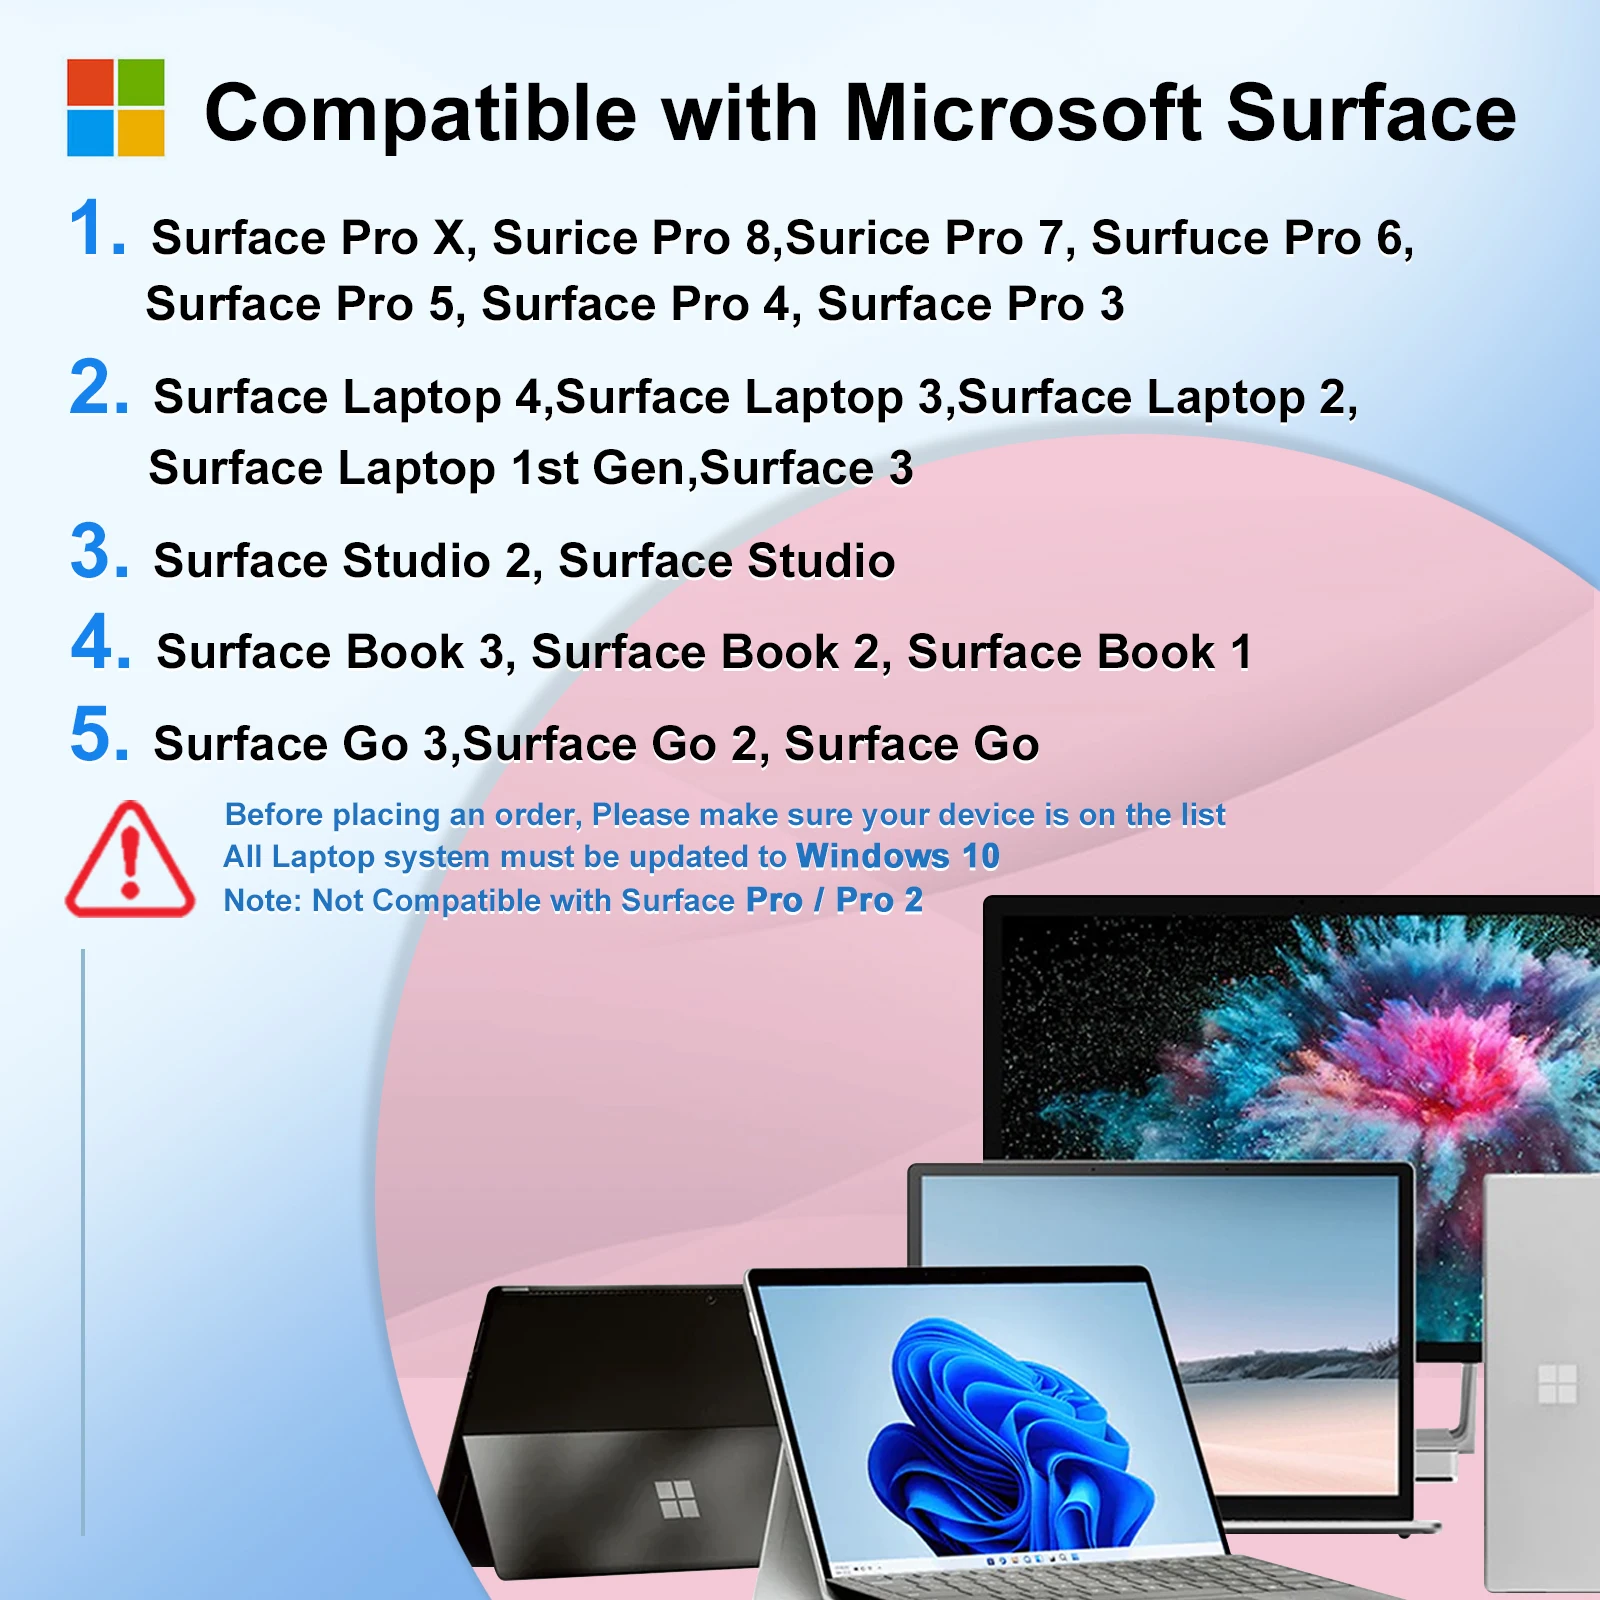 Surface Pen 1024 Stylus Pen for Microsoft Surface Pro X/8/7/6/5/4/3/Surface 3/go 3/go 2/go/Book 3 2 1/Laptop 4 3 2/Studio 2